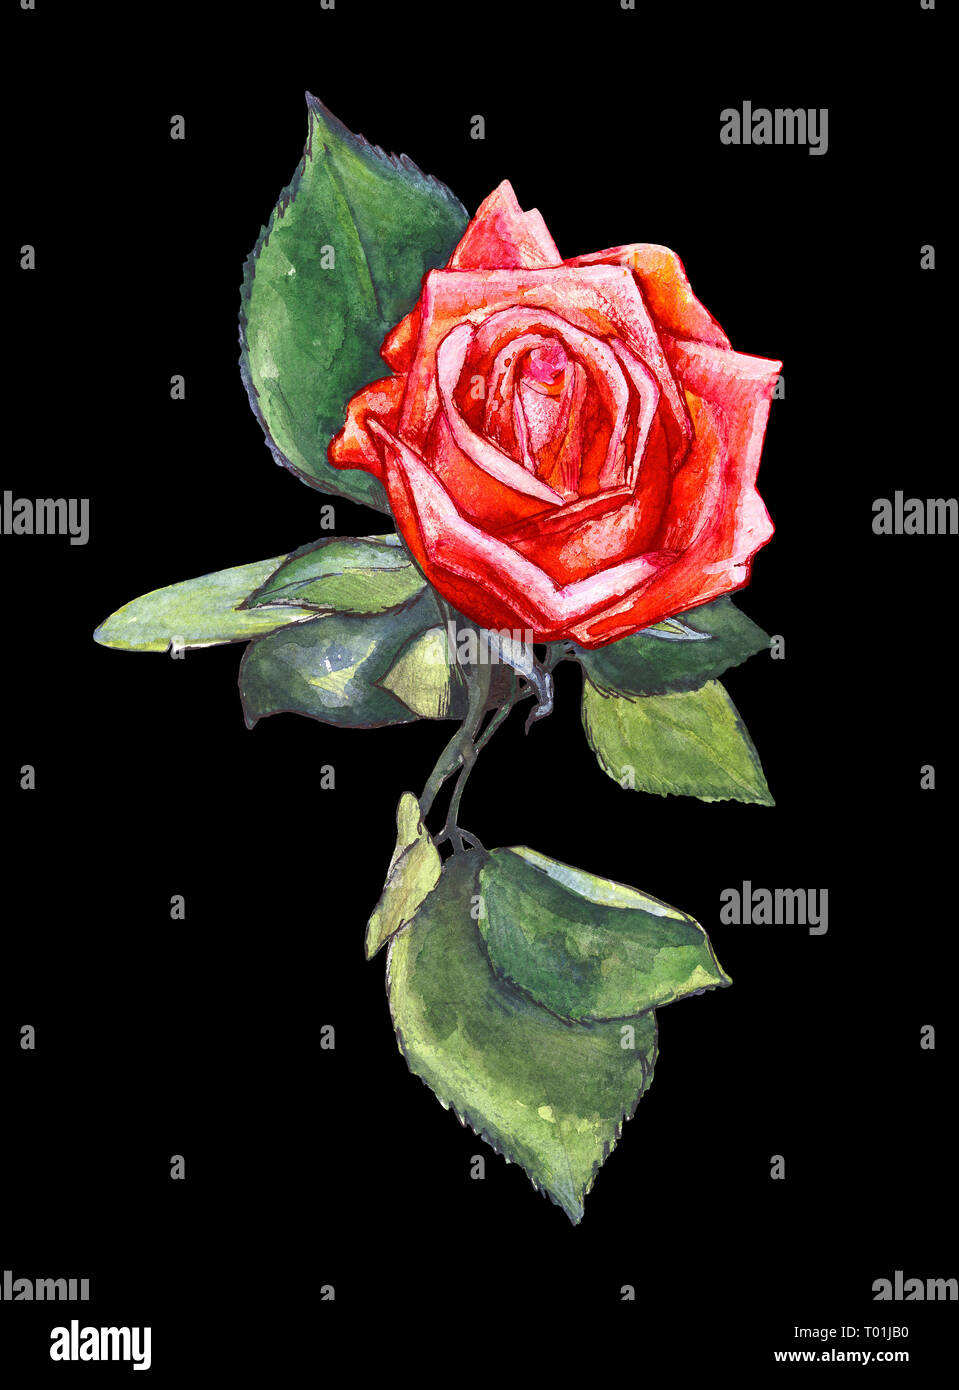 Rose rouge sur un fond noir. Illustration à l'aquarelle Banque D'Images